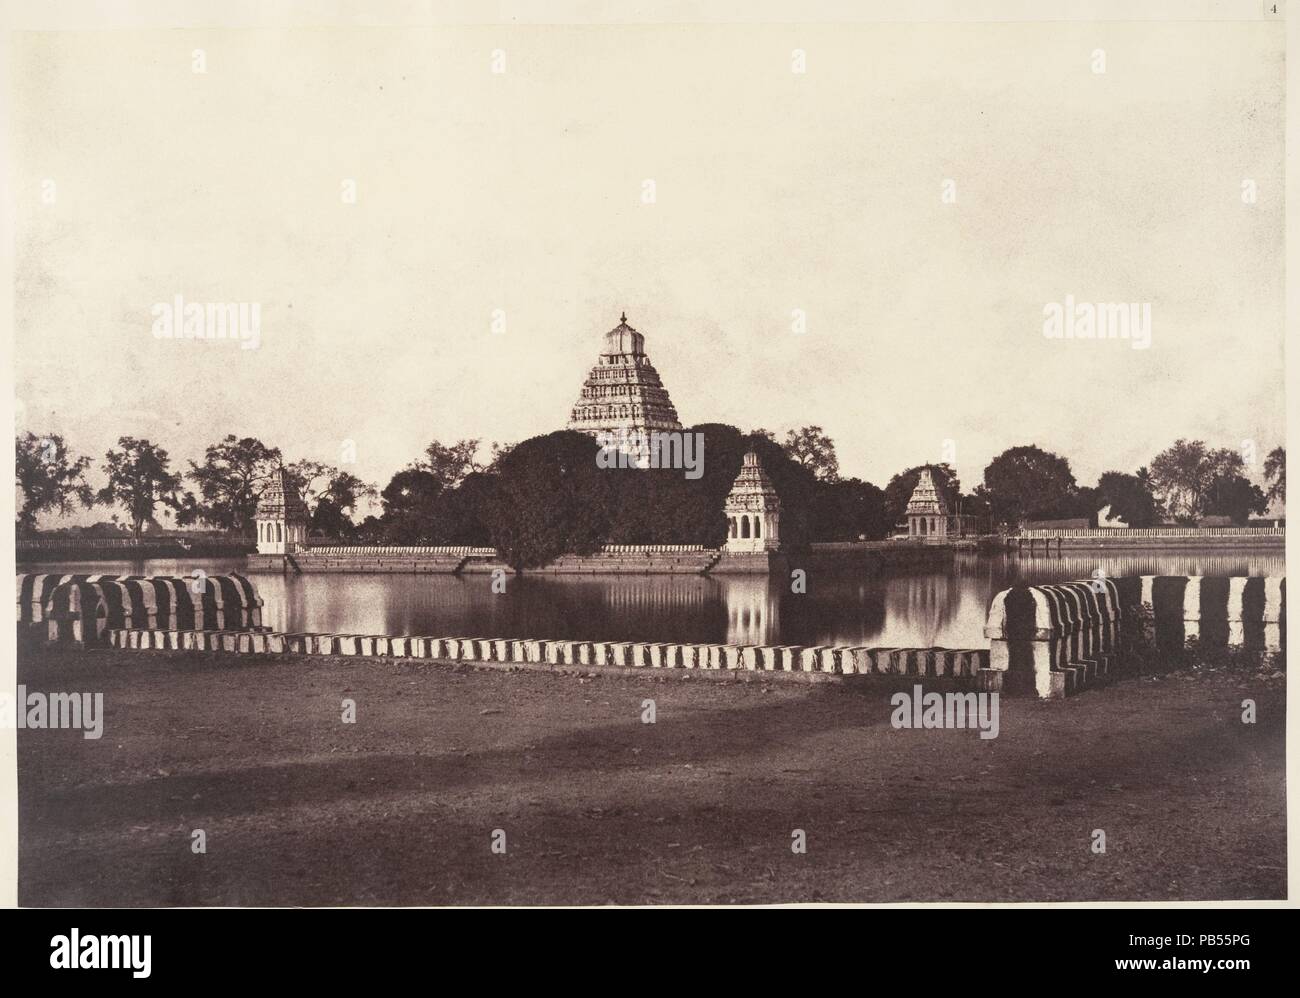 Le département de l-teppa. Artiste : Linnaeus Tripe (British, Devonport (Plymouth) 1822-1902 Quai Devonport). Dimensions : Image : 26 x 37,5 cm (10 1/4 x 14 3/4 in.) Mont : 45,2 x 56,2 cm (17 13/16 x 22 1/8 in.). Date : 1858. Les tripes était un officier militaire de carrière en Inde et, à la fin des années 1850, le gouvernement photographe de la présidence de Madras. En seulement cinq ans, il a fait près d'un millier de vues de l'Inde et de la Birmanie. Dans cette vue d'un teppakulam, ou réservoir, à Madurai, Inde du Sud, le miroir-comme la surface de l'eau reflète les rayures de la mur de pierre. Dans le texte d'accompagnement, les Tripes explai Banque D'Images